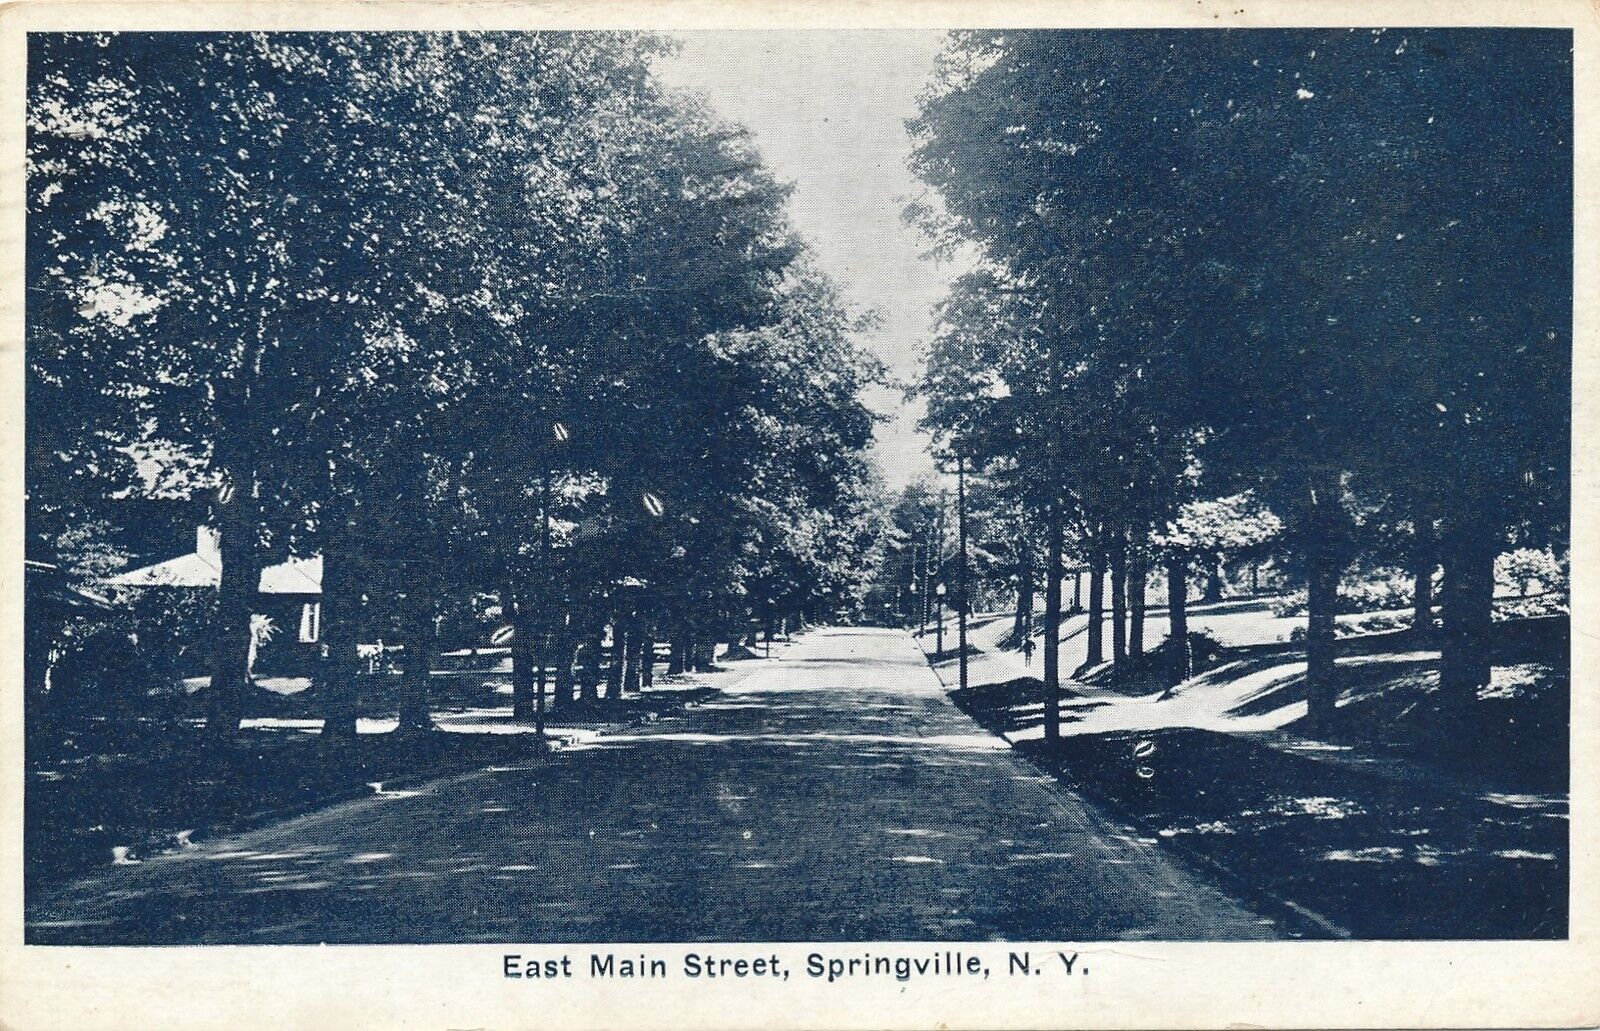 SPRINGVILLE NY – East Main Street - 1935